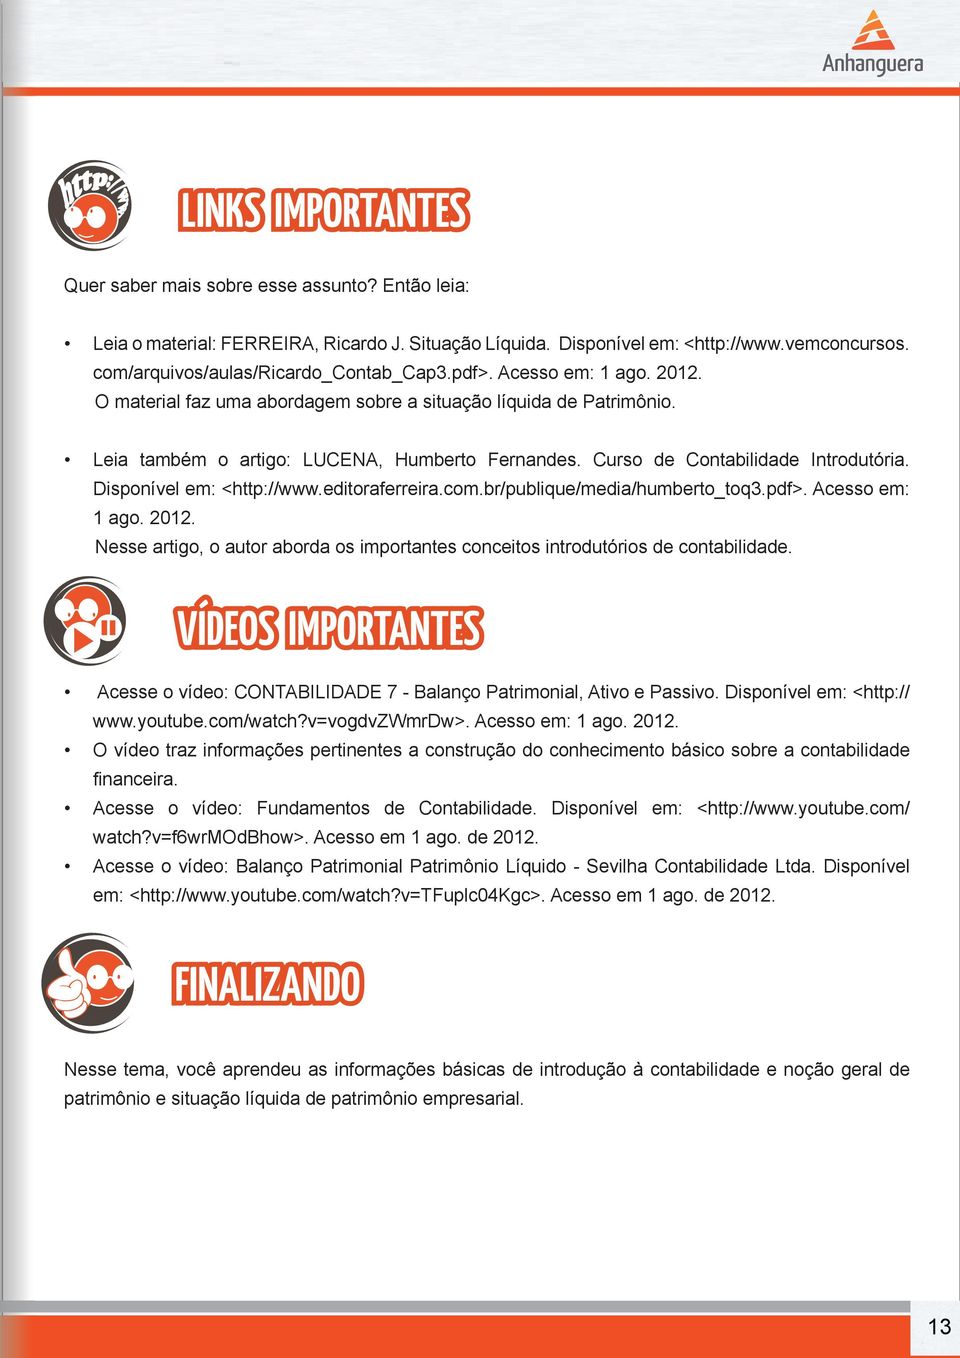 Curso de Contabilidade Introdutória. Disponível em: <http://www.editoraferreira.com.br/publique/media/humberto_toq3.pdf>. Acesso em: 1 ago. 2012.